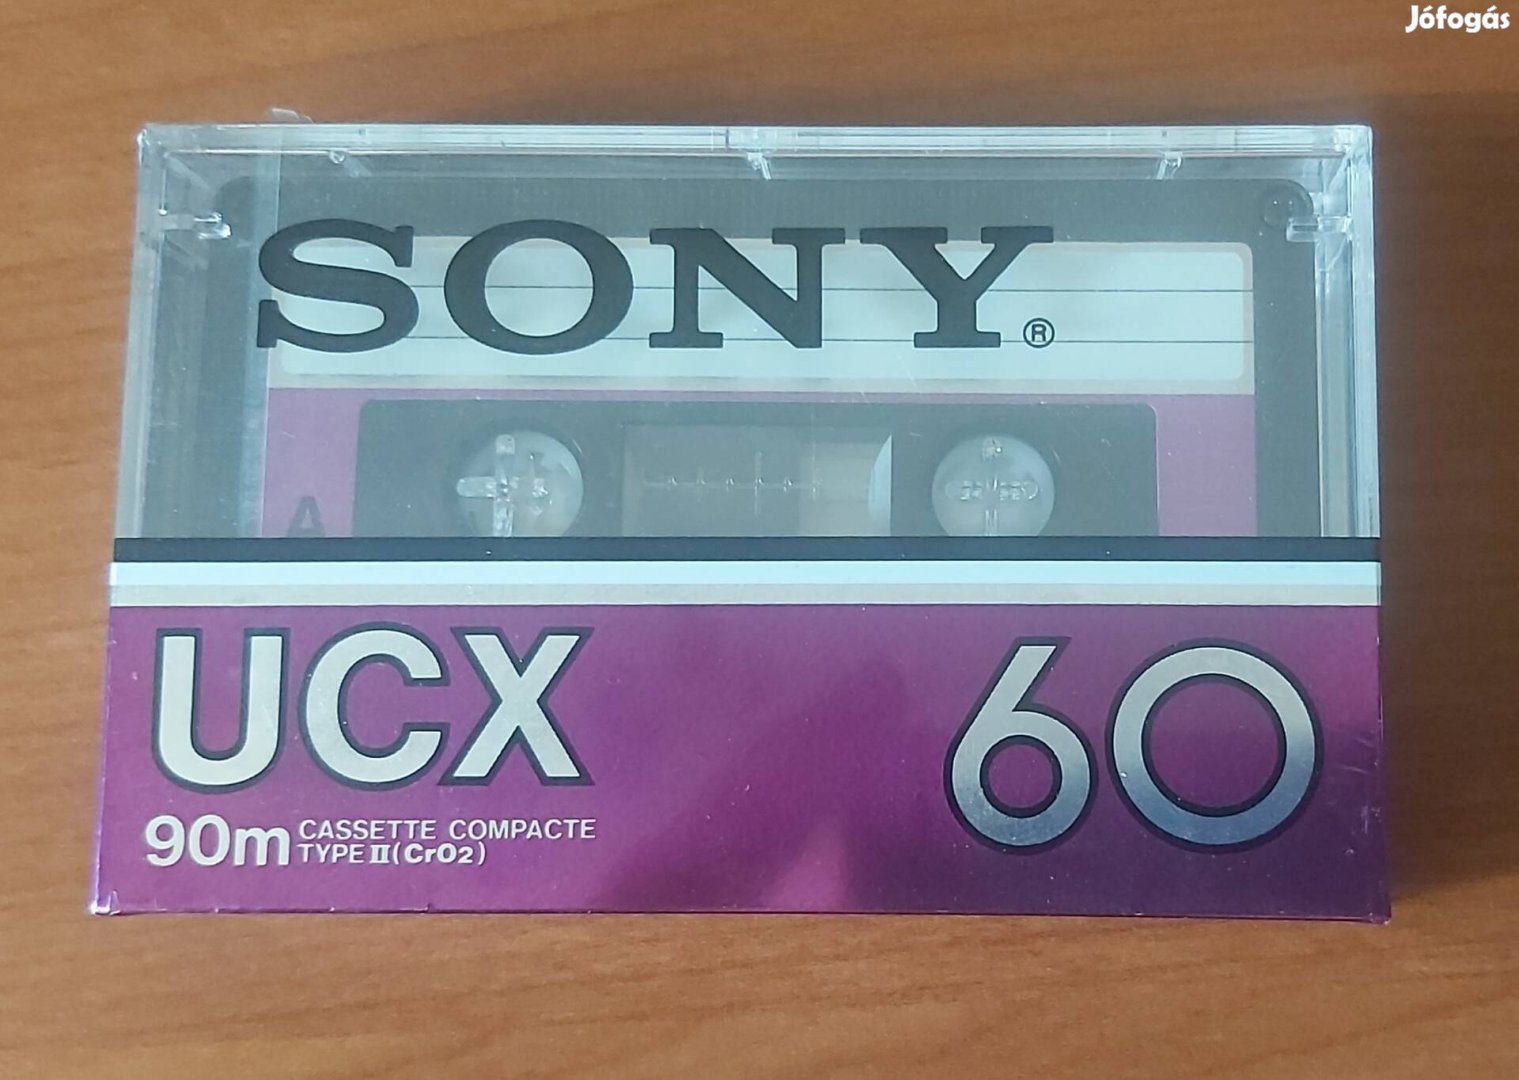 Sony Ucx 60 bontatlan audió kompakt magnó kazetta CrO2 krómos type II